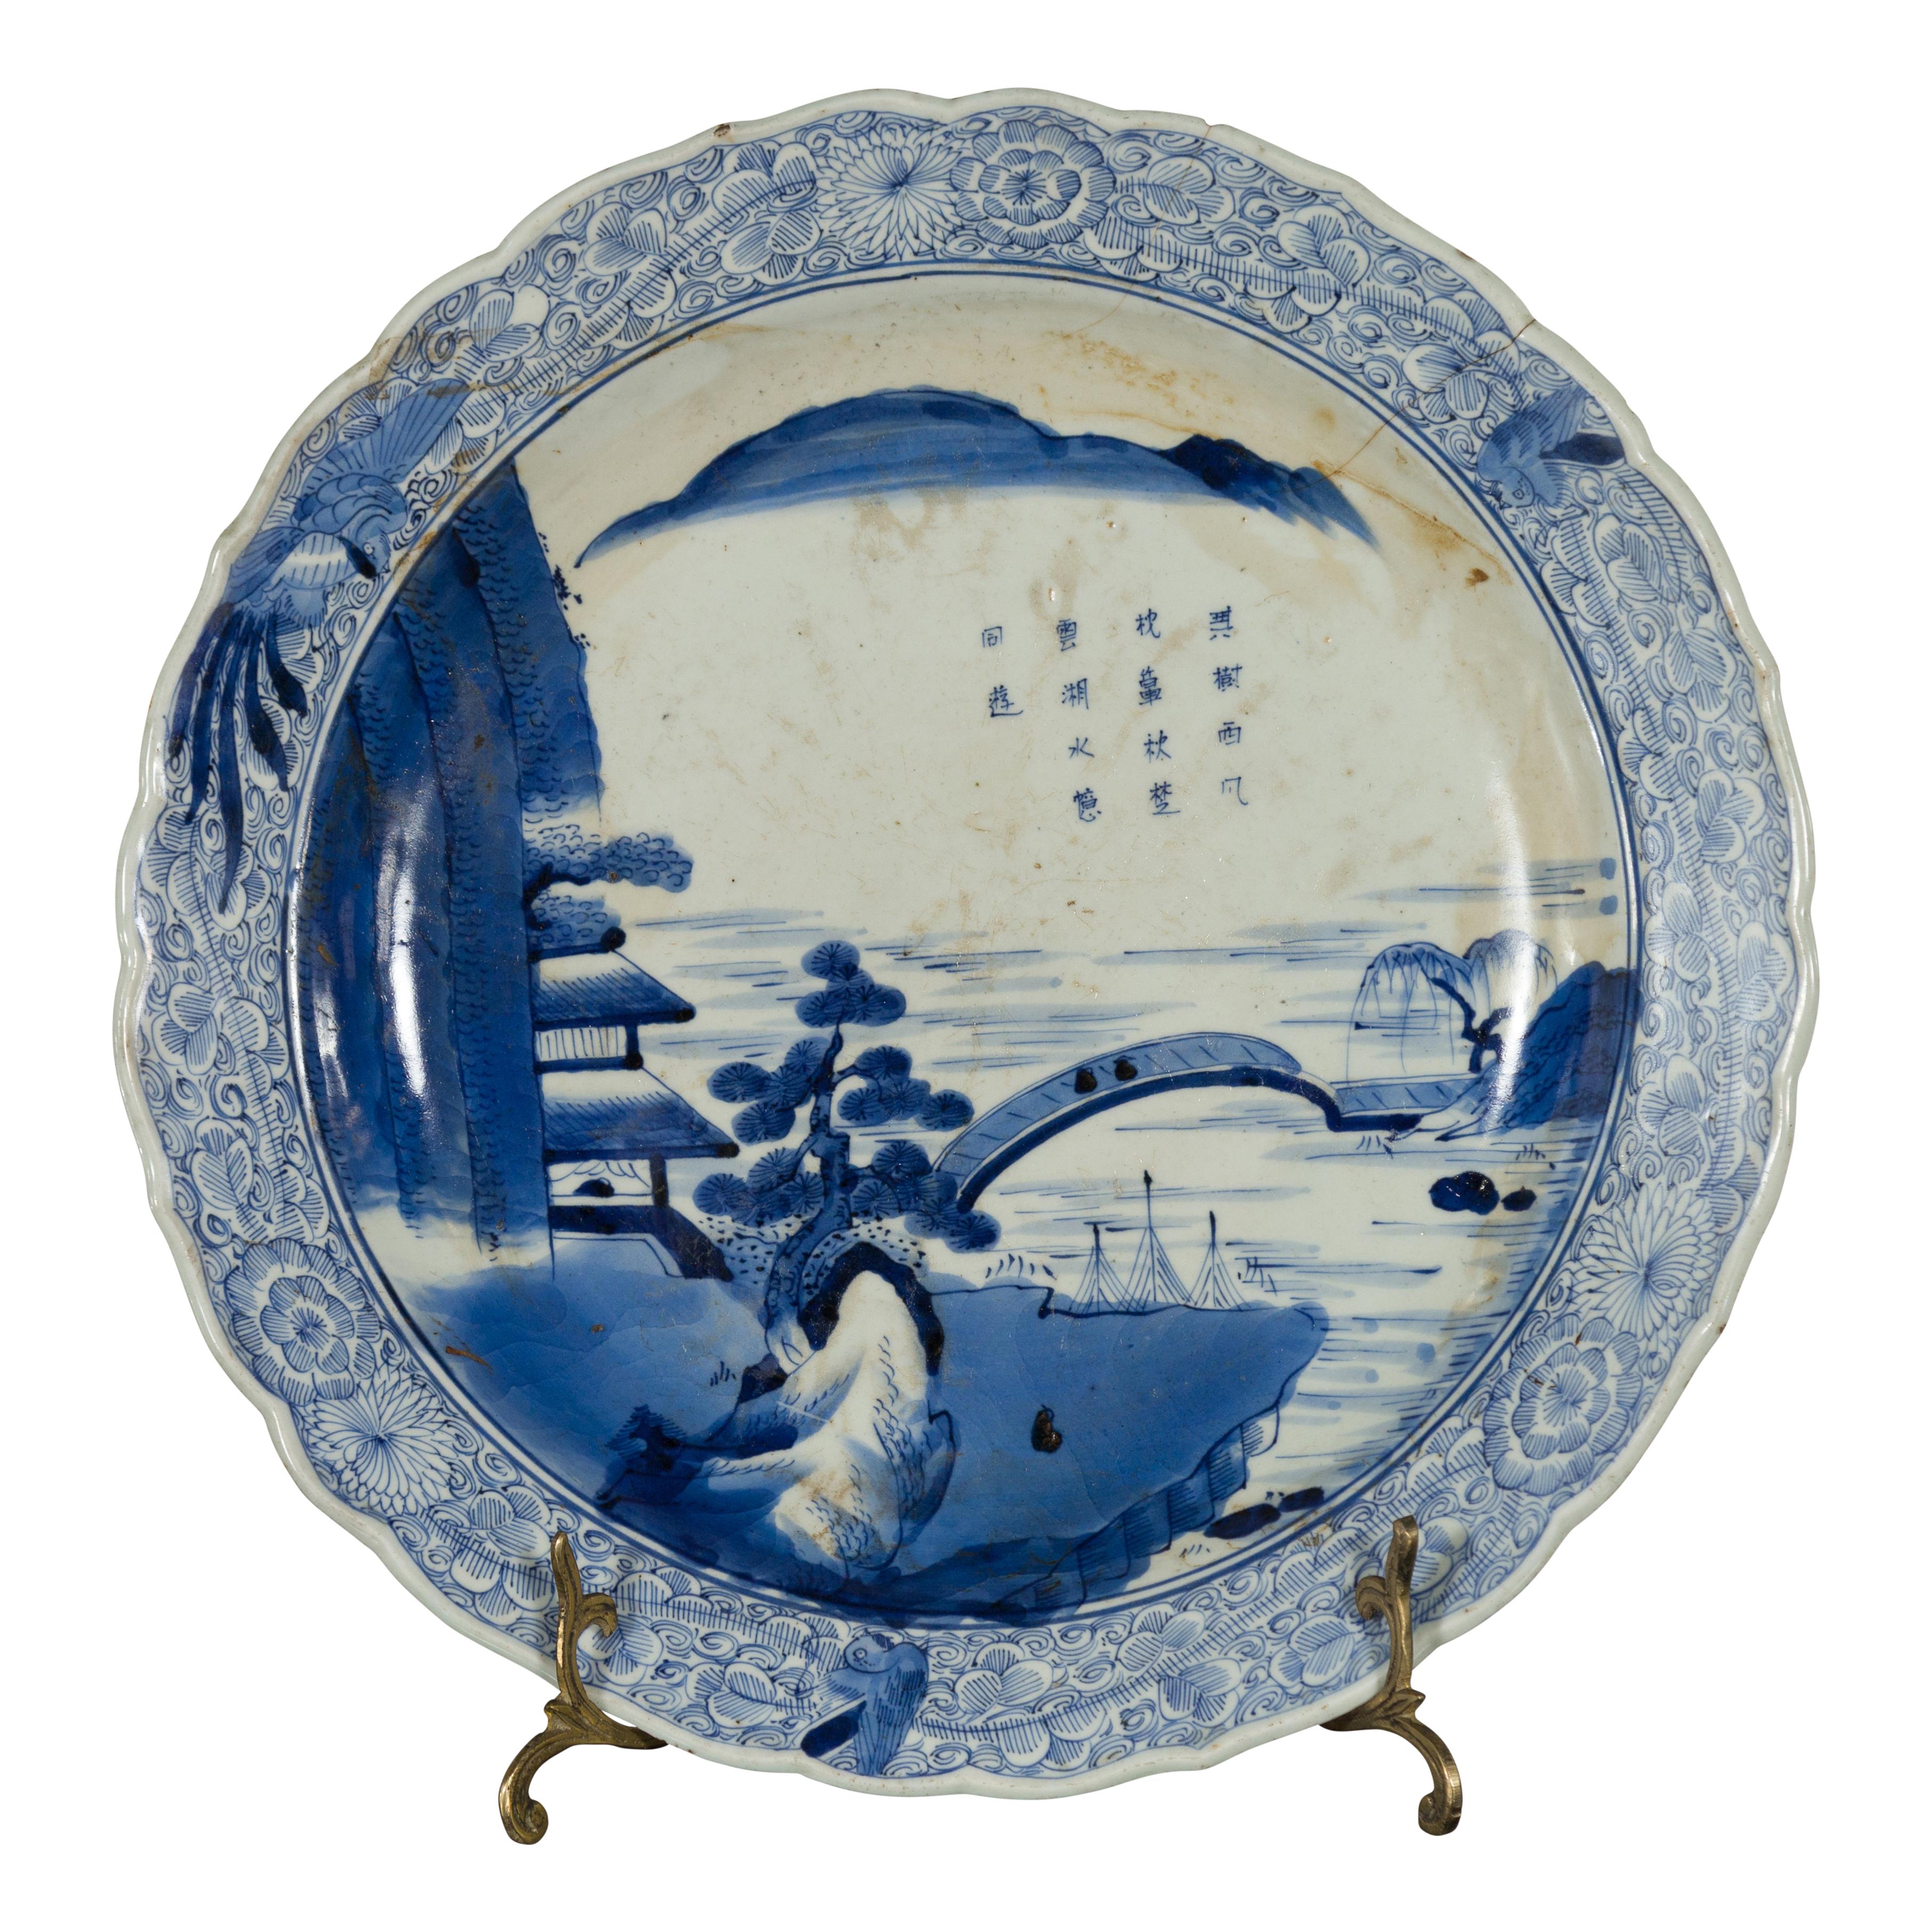 Ein japanischer Imari-Porzellanteller aus dem 19. Jahrhundert mit handgemaltem blau-weißem Berg-, Baum-, Architektur- und Brückendekor. Dieser Teller aus Imari-Porzellan, der im 19. Jahrhundert in Japan hergestellt wurde, zeigt ein zartes